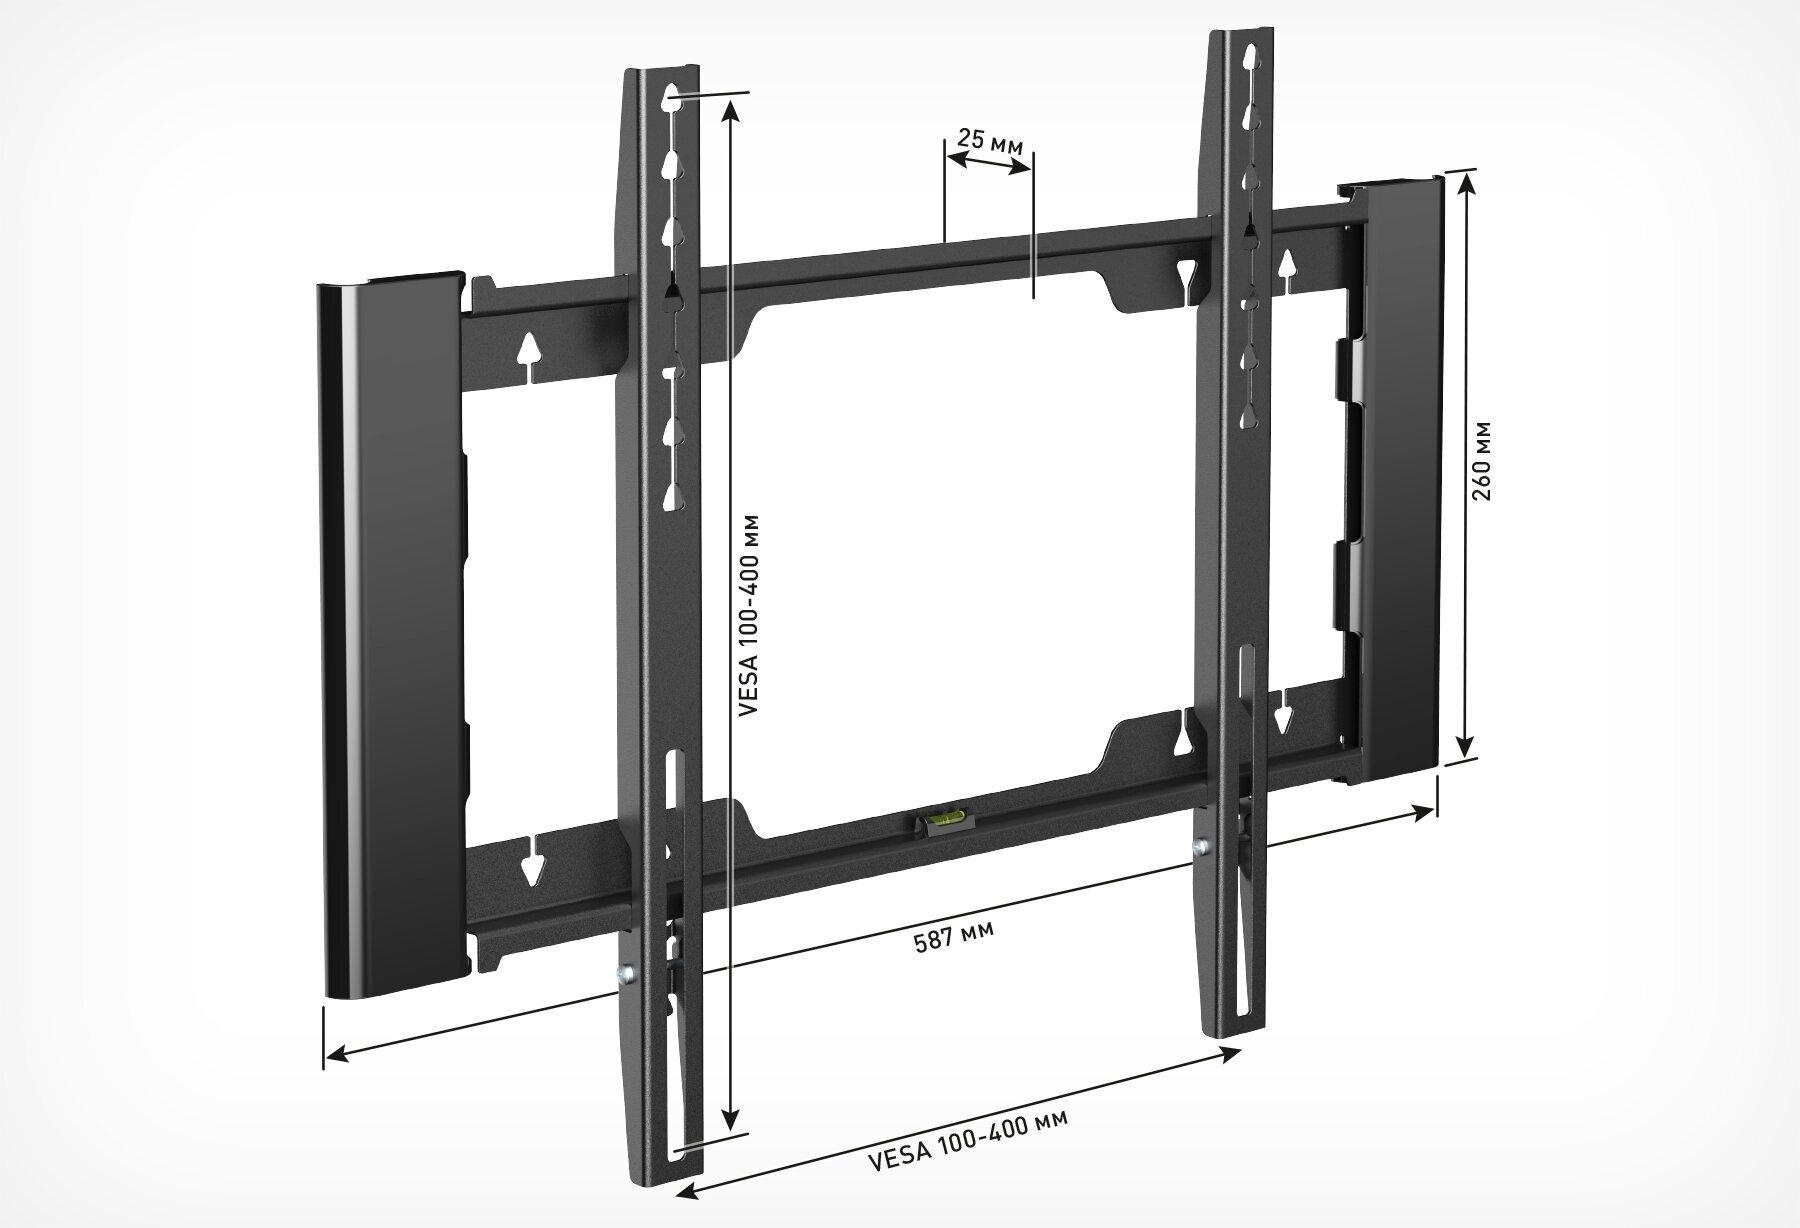 Кронштейн для телевизора Holder LCD-F4915-B черный